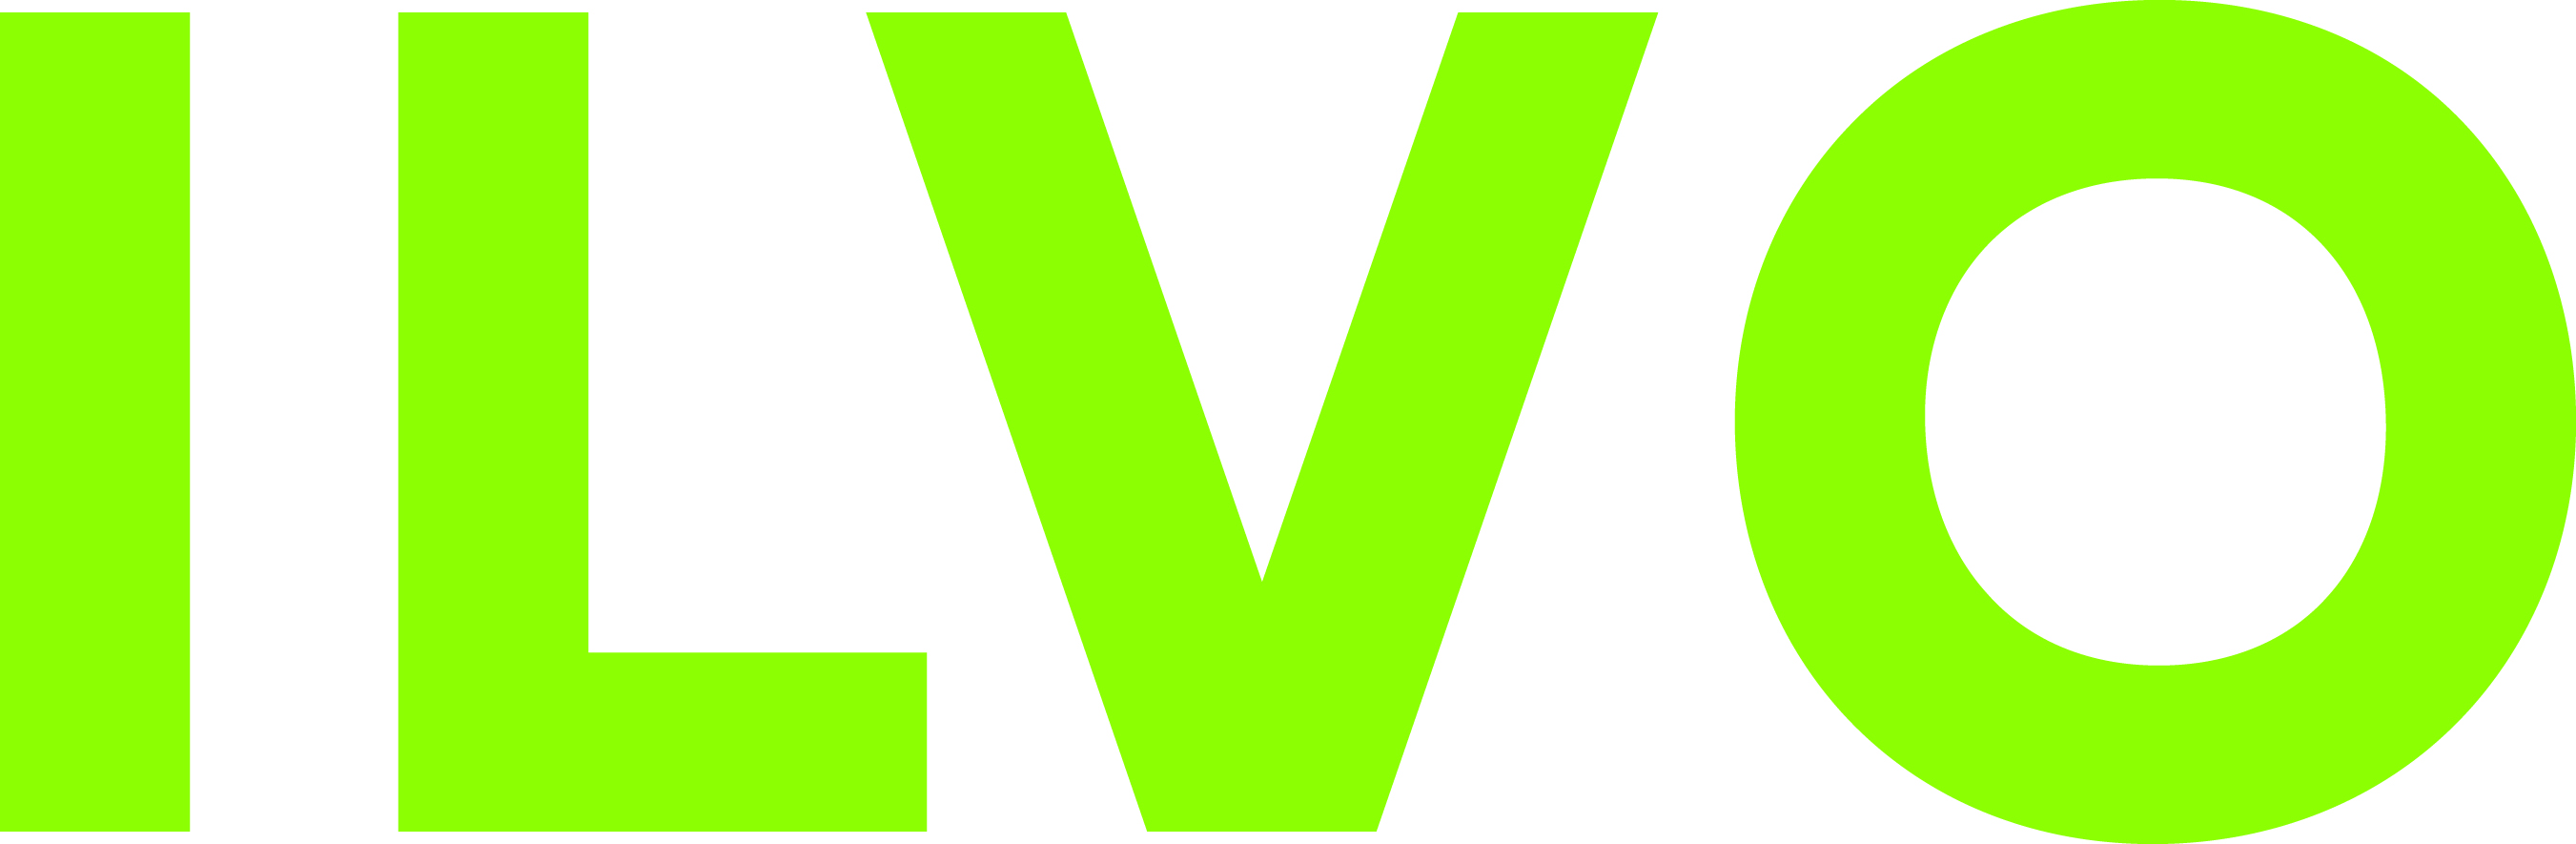 logo ILVO